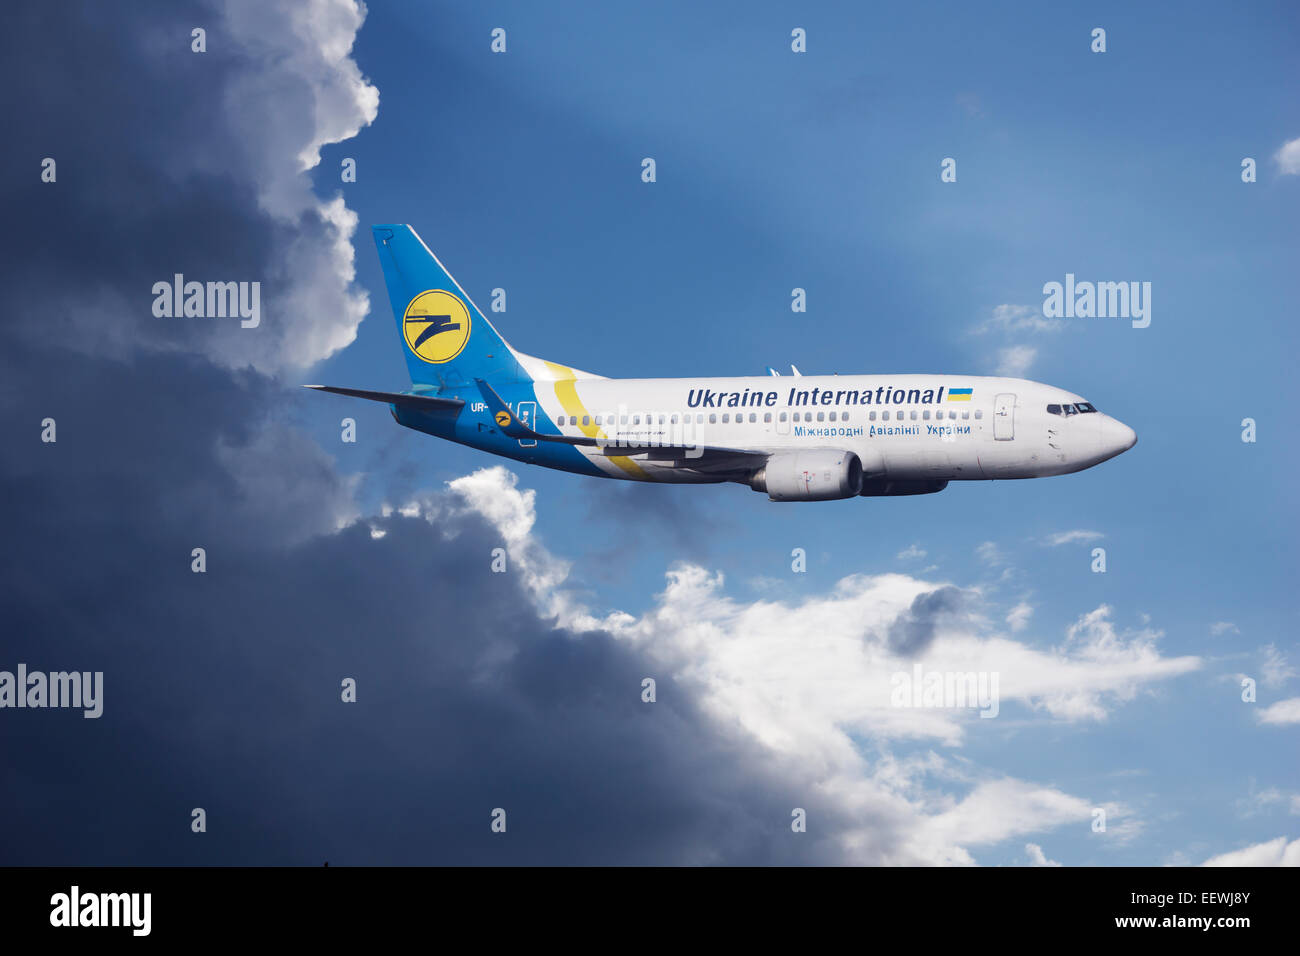 Ukraine International Airlines, Boeing 737-500 en vuelo durante una tormenta eléctrica Foto de stock